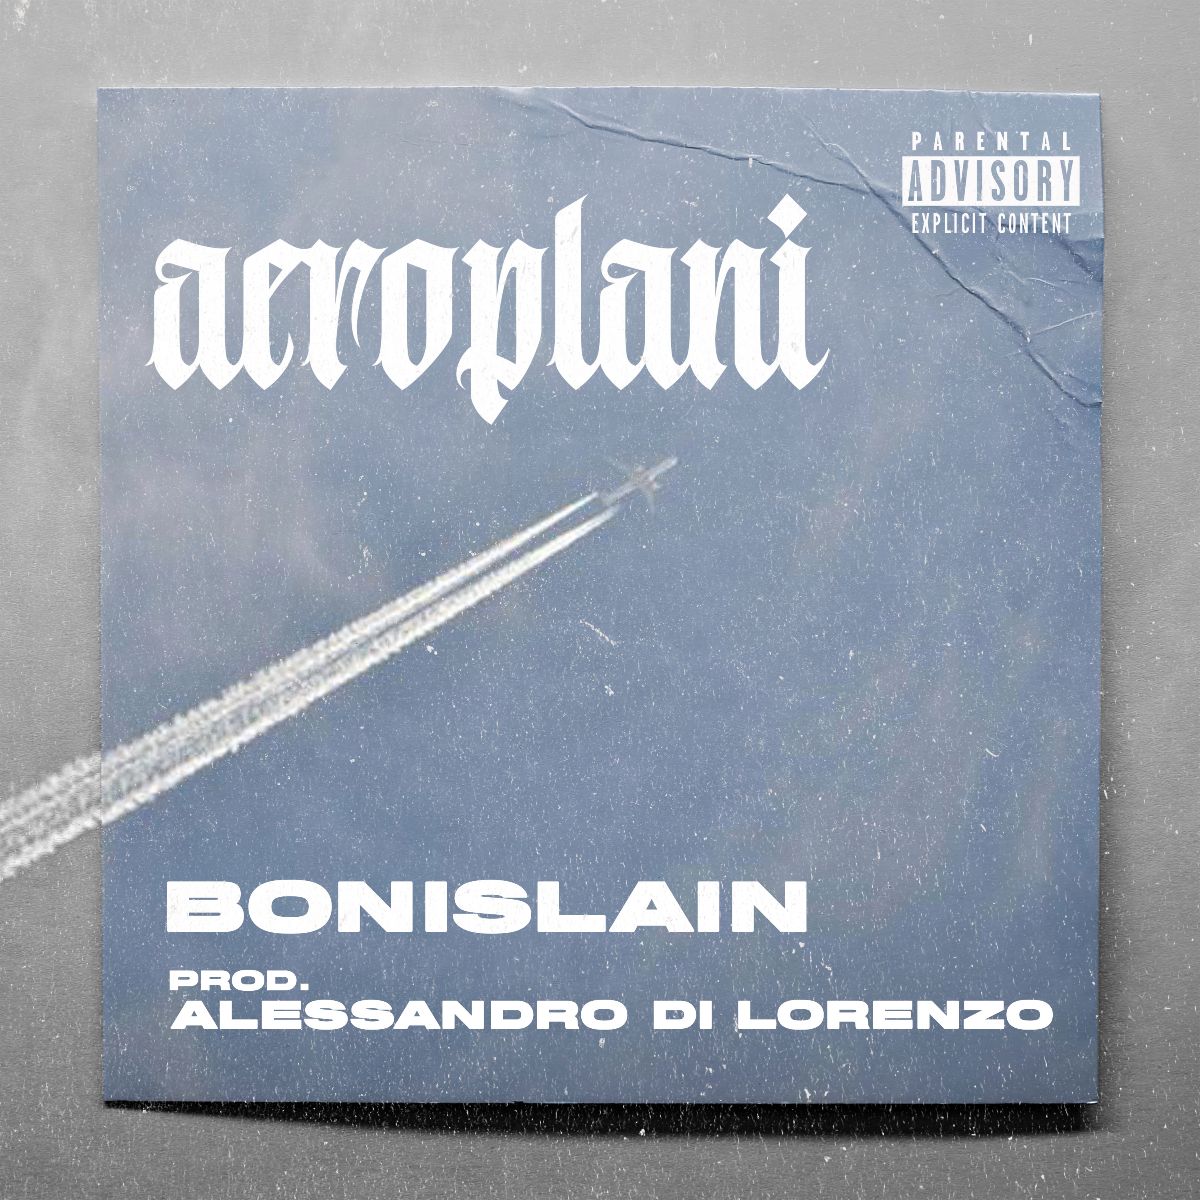 Bonislain, “Aeroplani”, l’amore vince sugli errori del passato nel nuovo singolo dell’artista siciliano